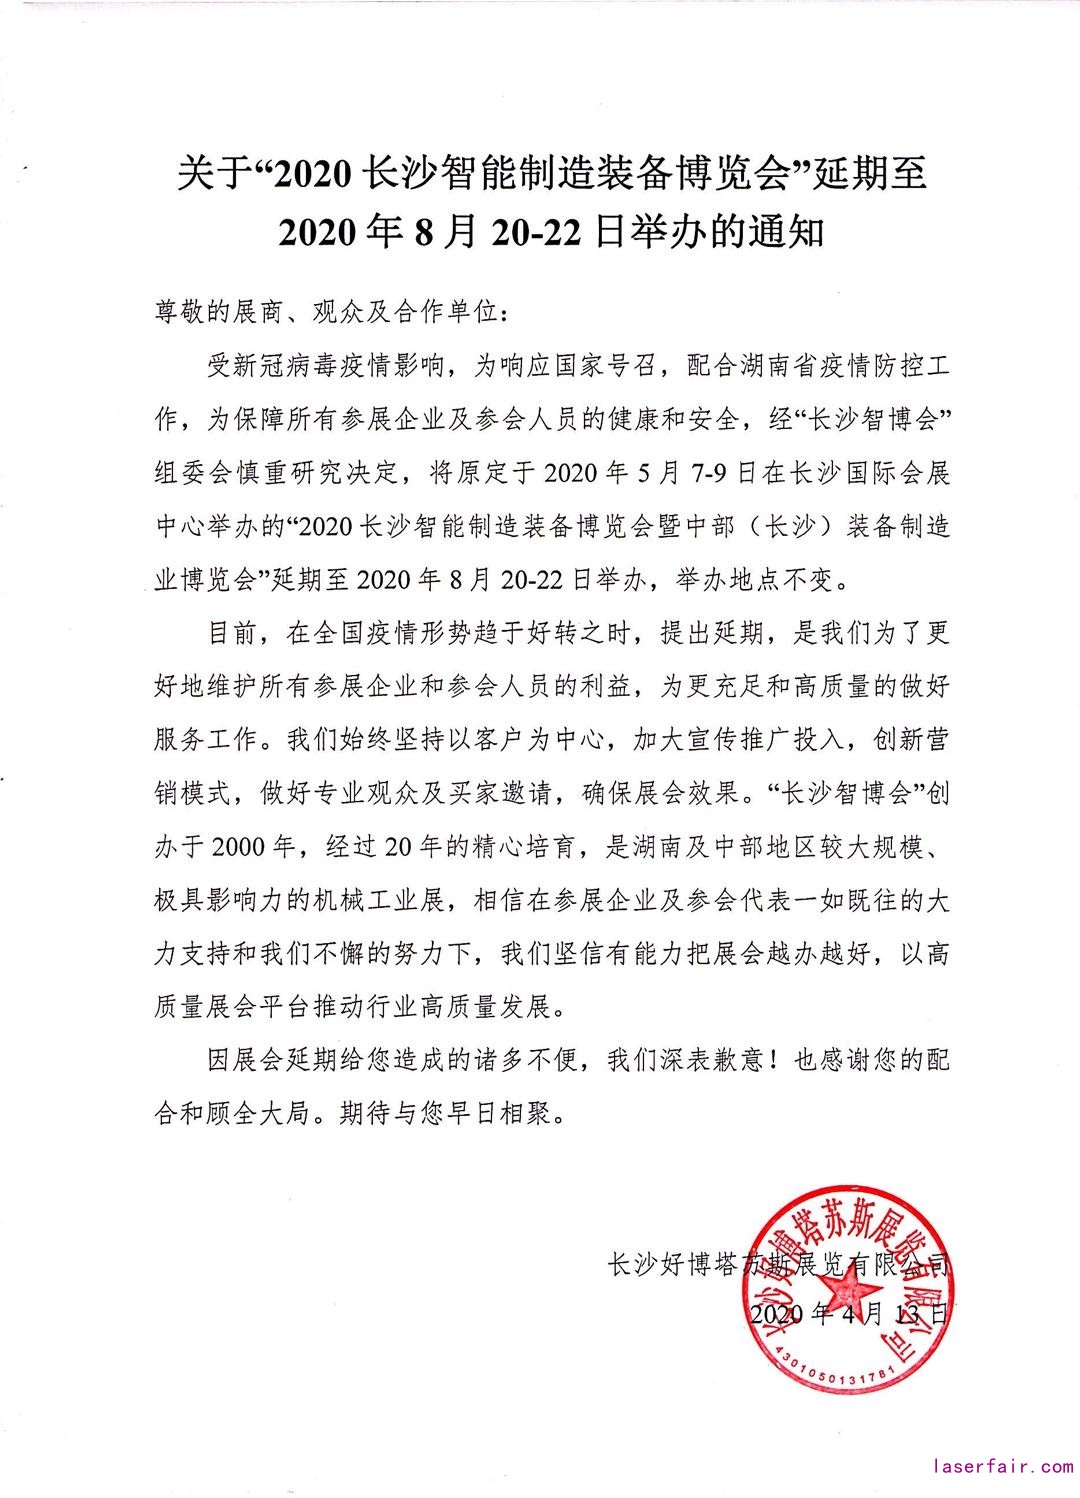 通知|2020长沙智博会延期至8月20-22日举办